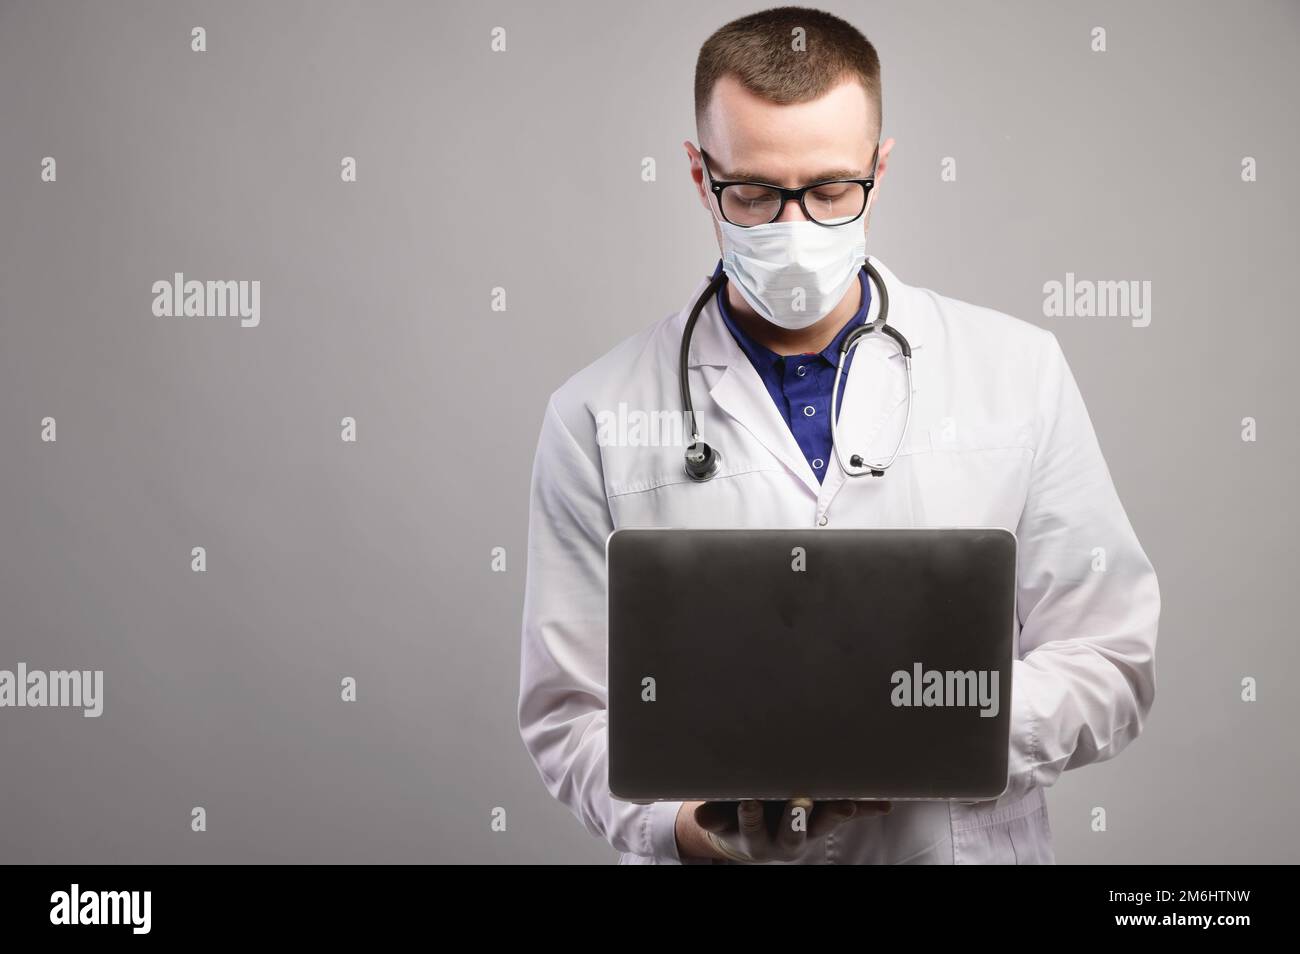 Junger weißer Arzt mit Maske und Brille benutzt seinen Laptop. studioporträt Stockfoto